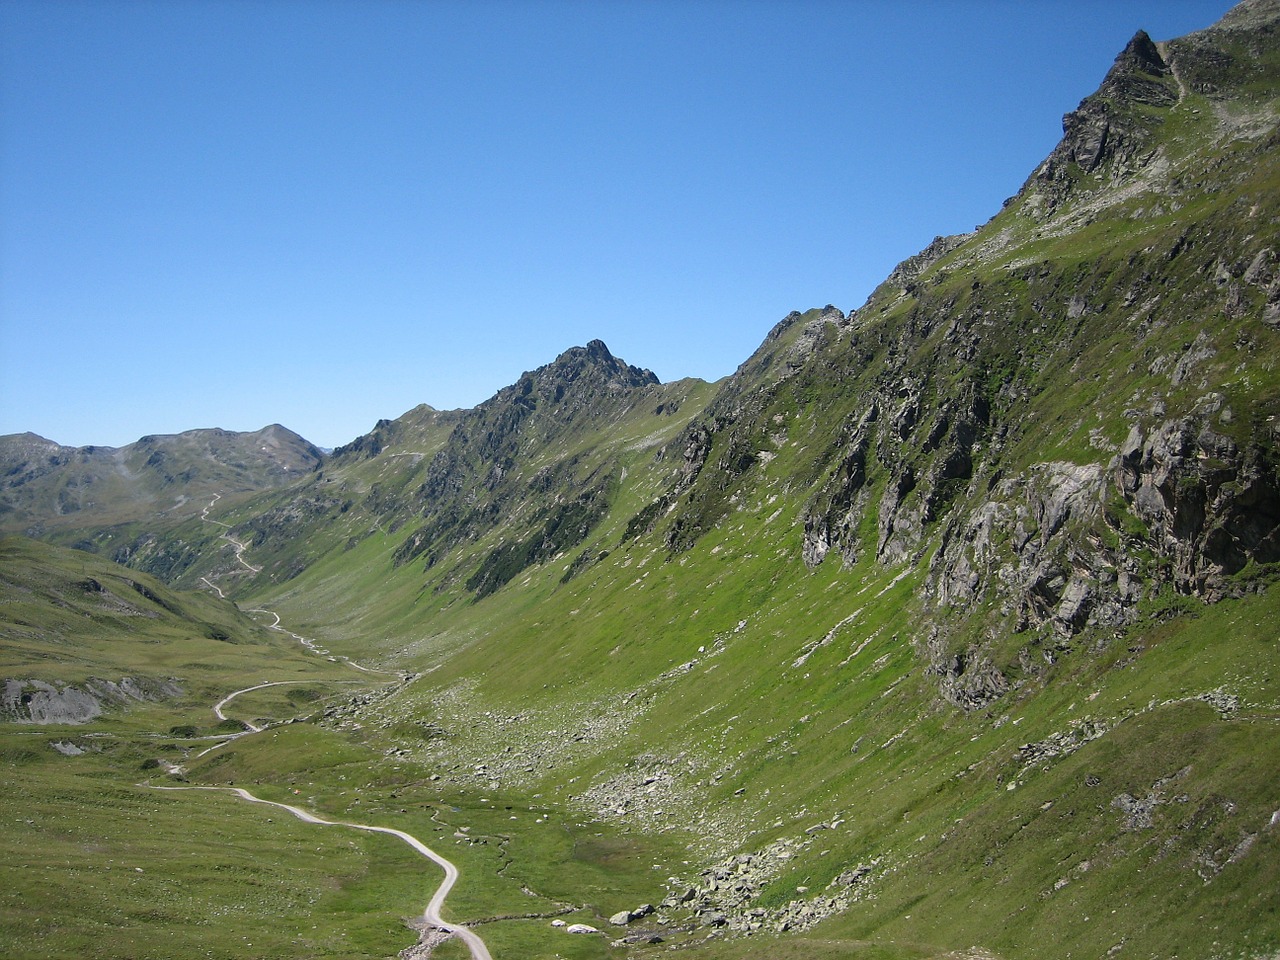 Alpenüberquerung zu Fuss